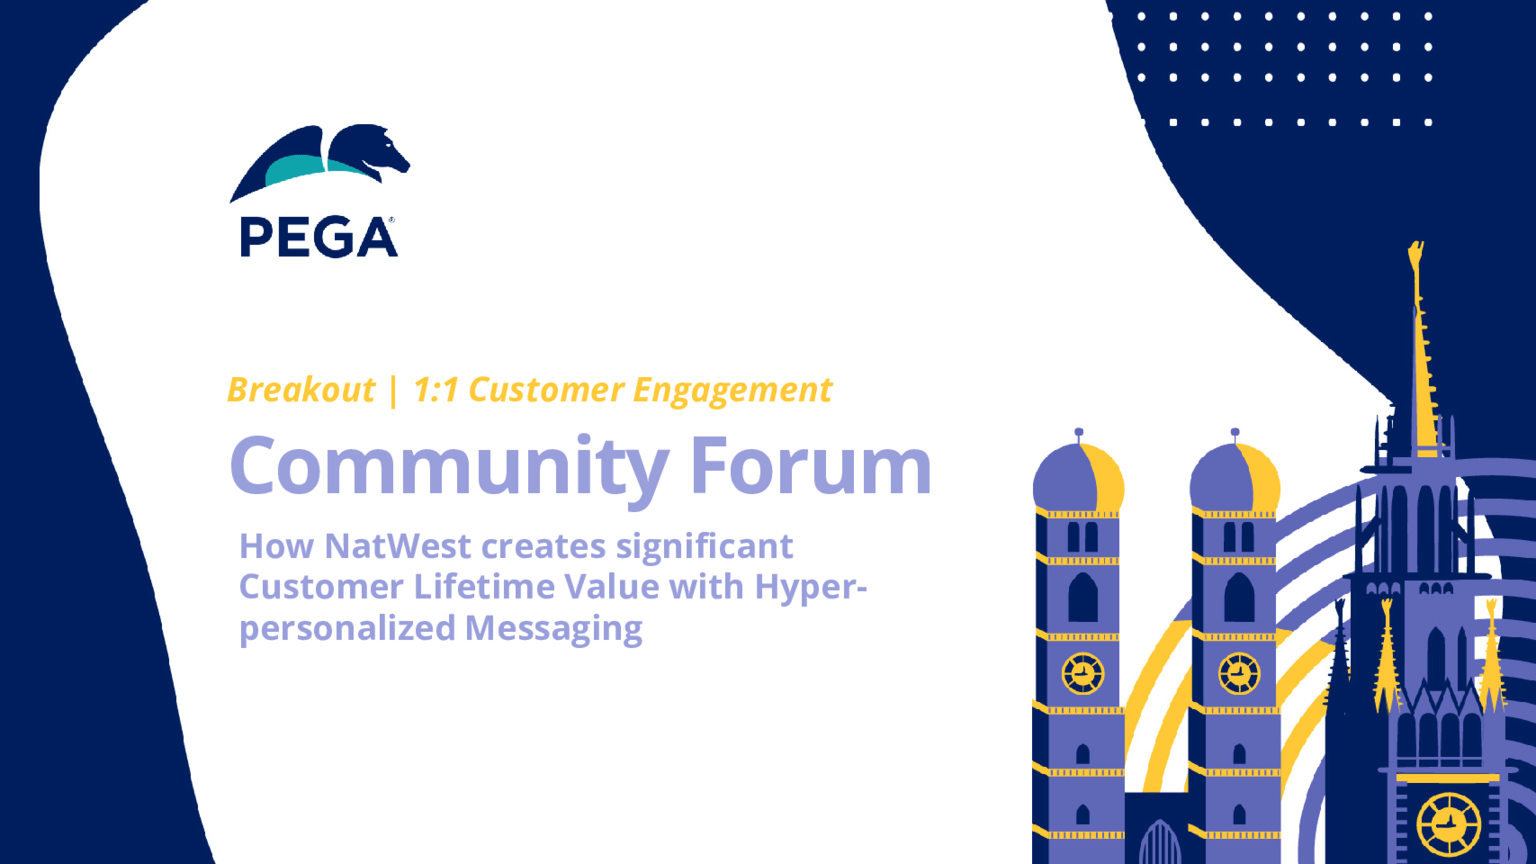 Pega Community Forum - NatWest Success Story: Wie NatWest mit hyper-personalisiertem Messaging einen signifikanten Customer Lifetime Value schafft (Präsentation)